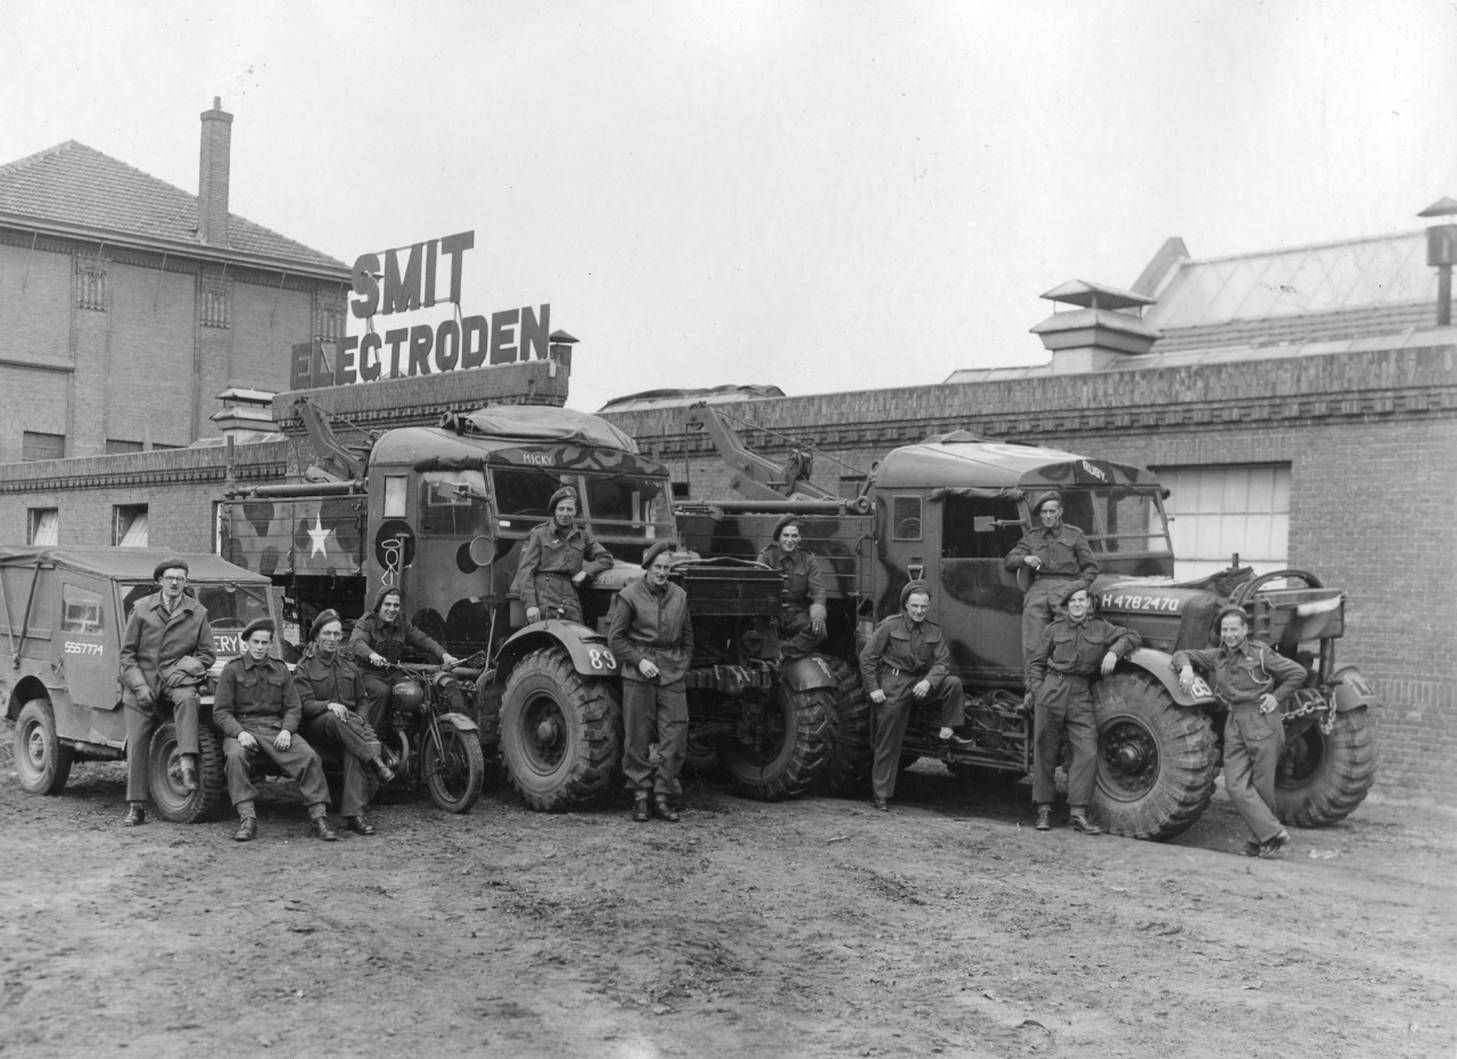 Een bataljon Amerikaanse soldaten bij de Smit Electrodenfabriek rond 1944/1945)